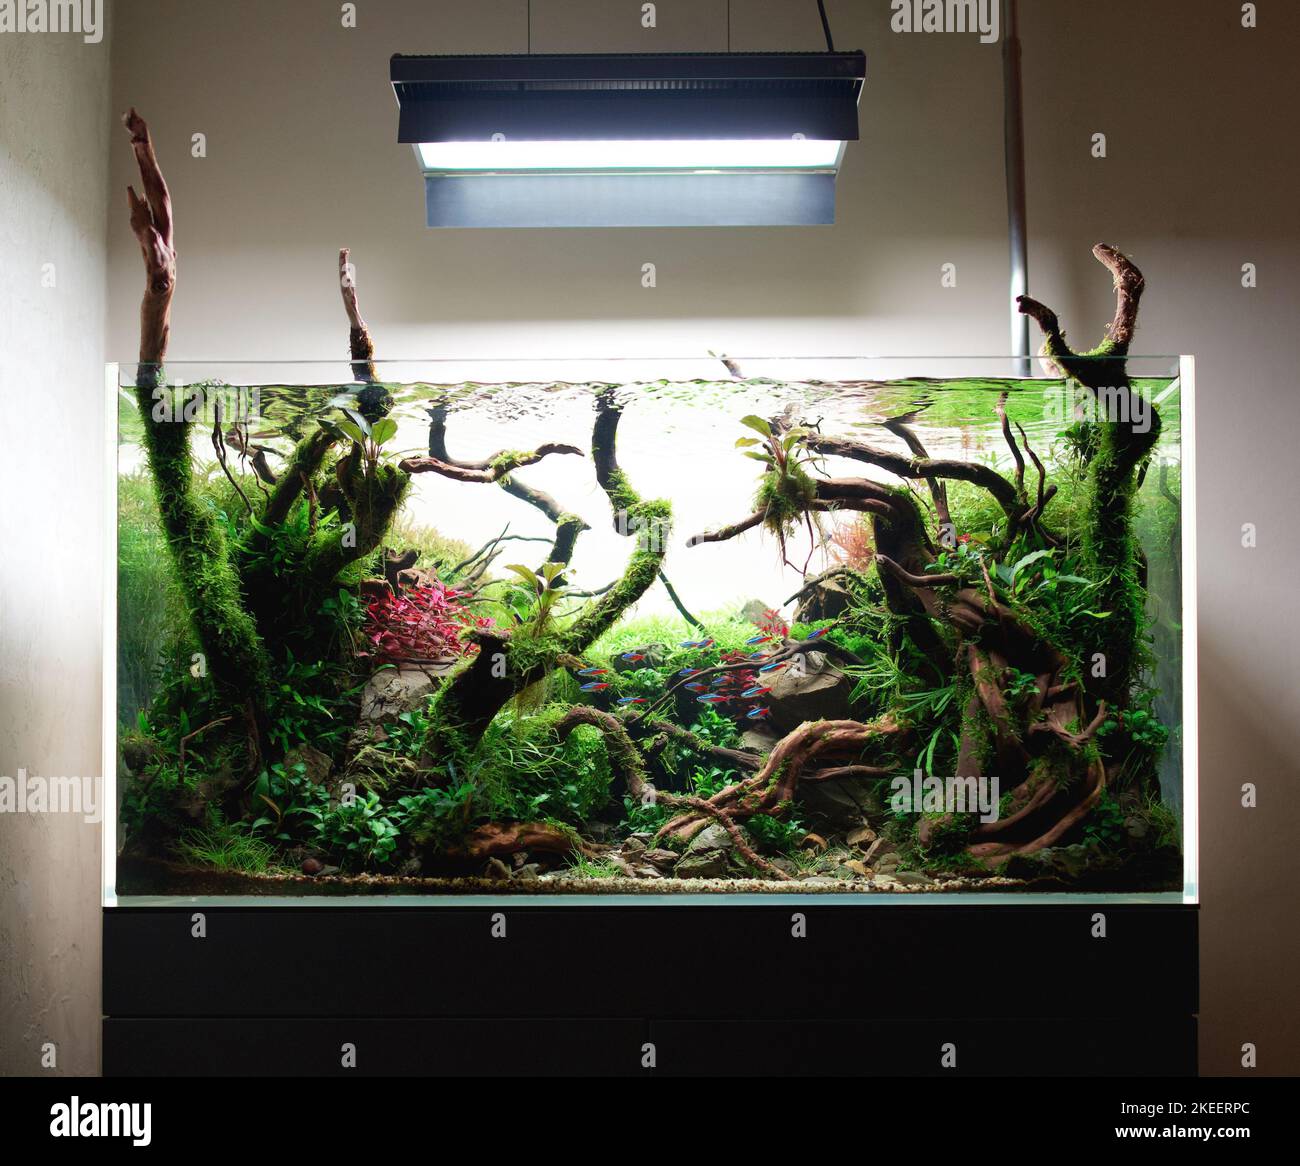 Piante d'acquario immagini e fotografie stock ad alta risoluzione - Alamy